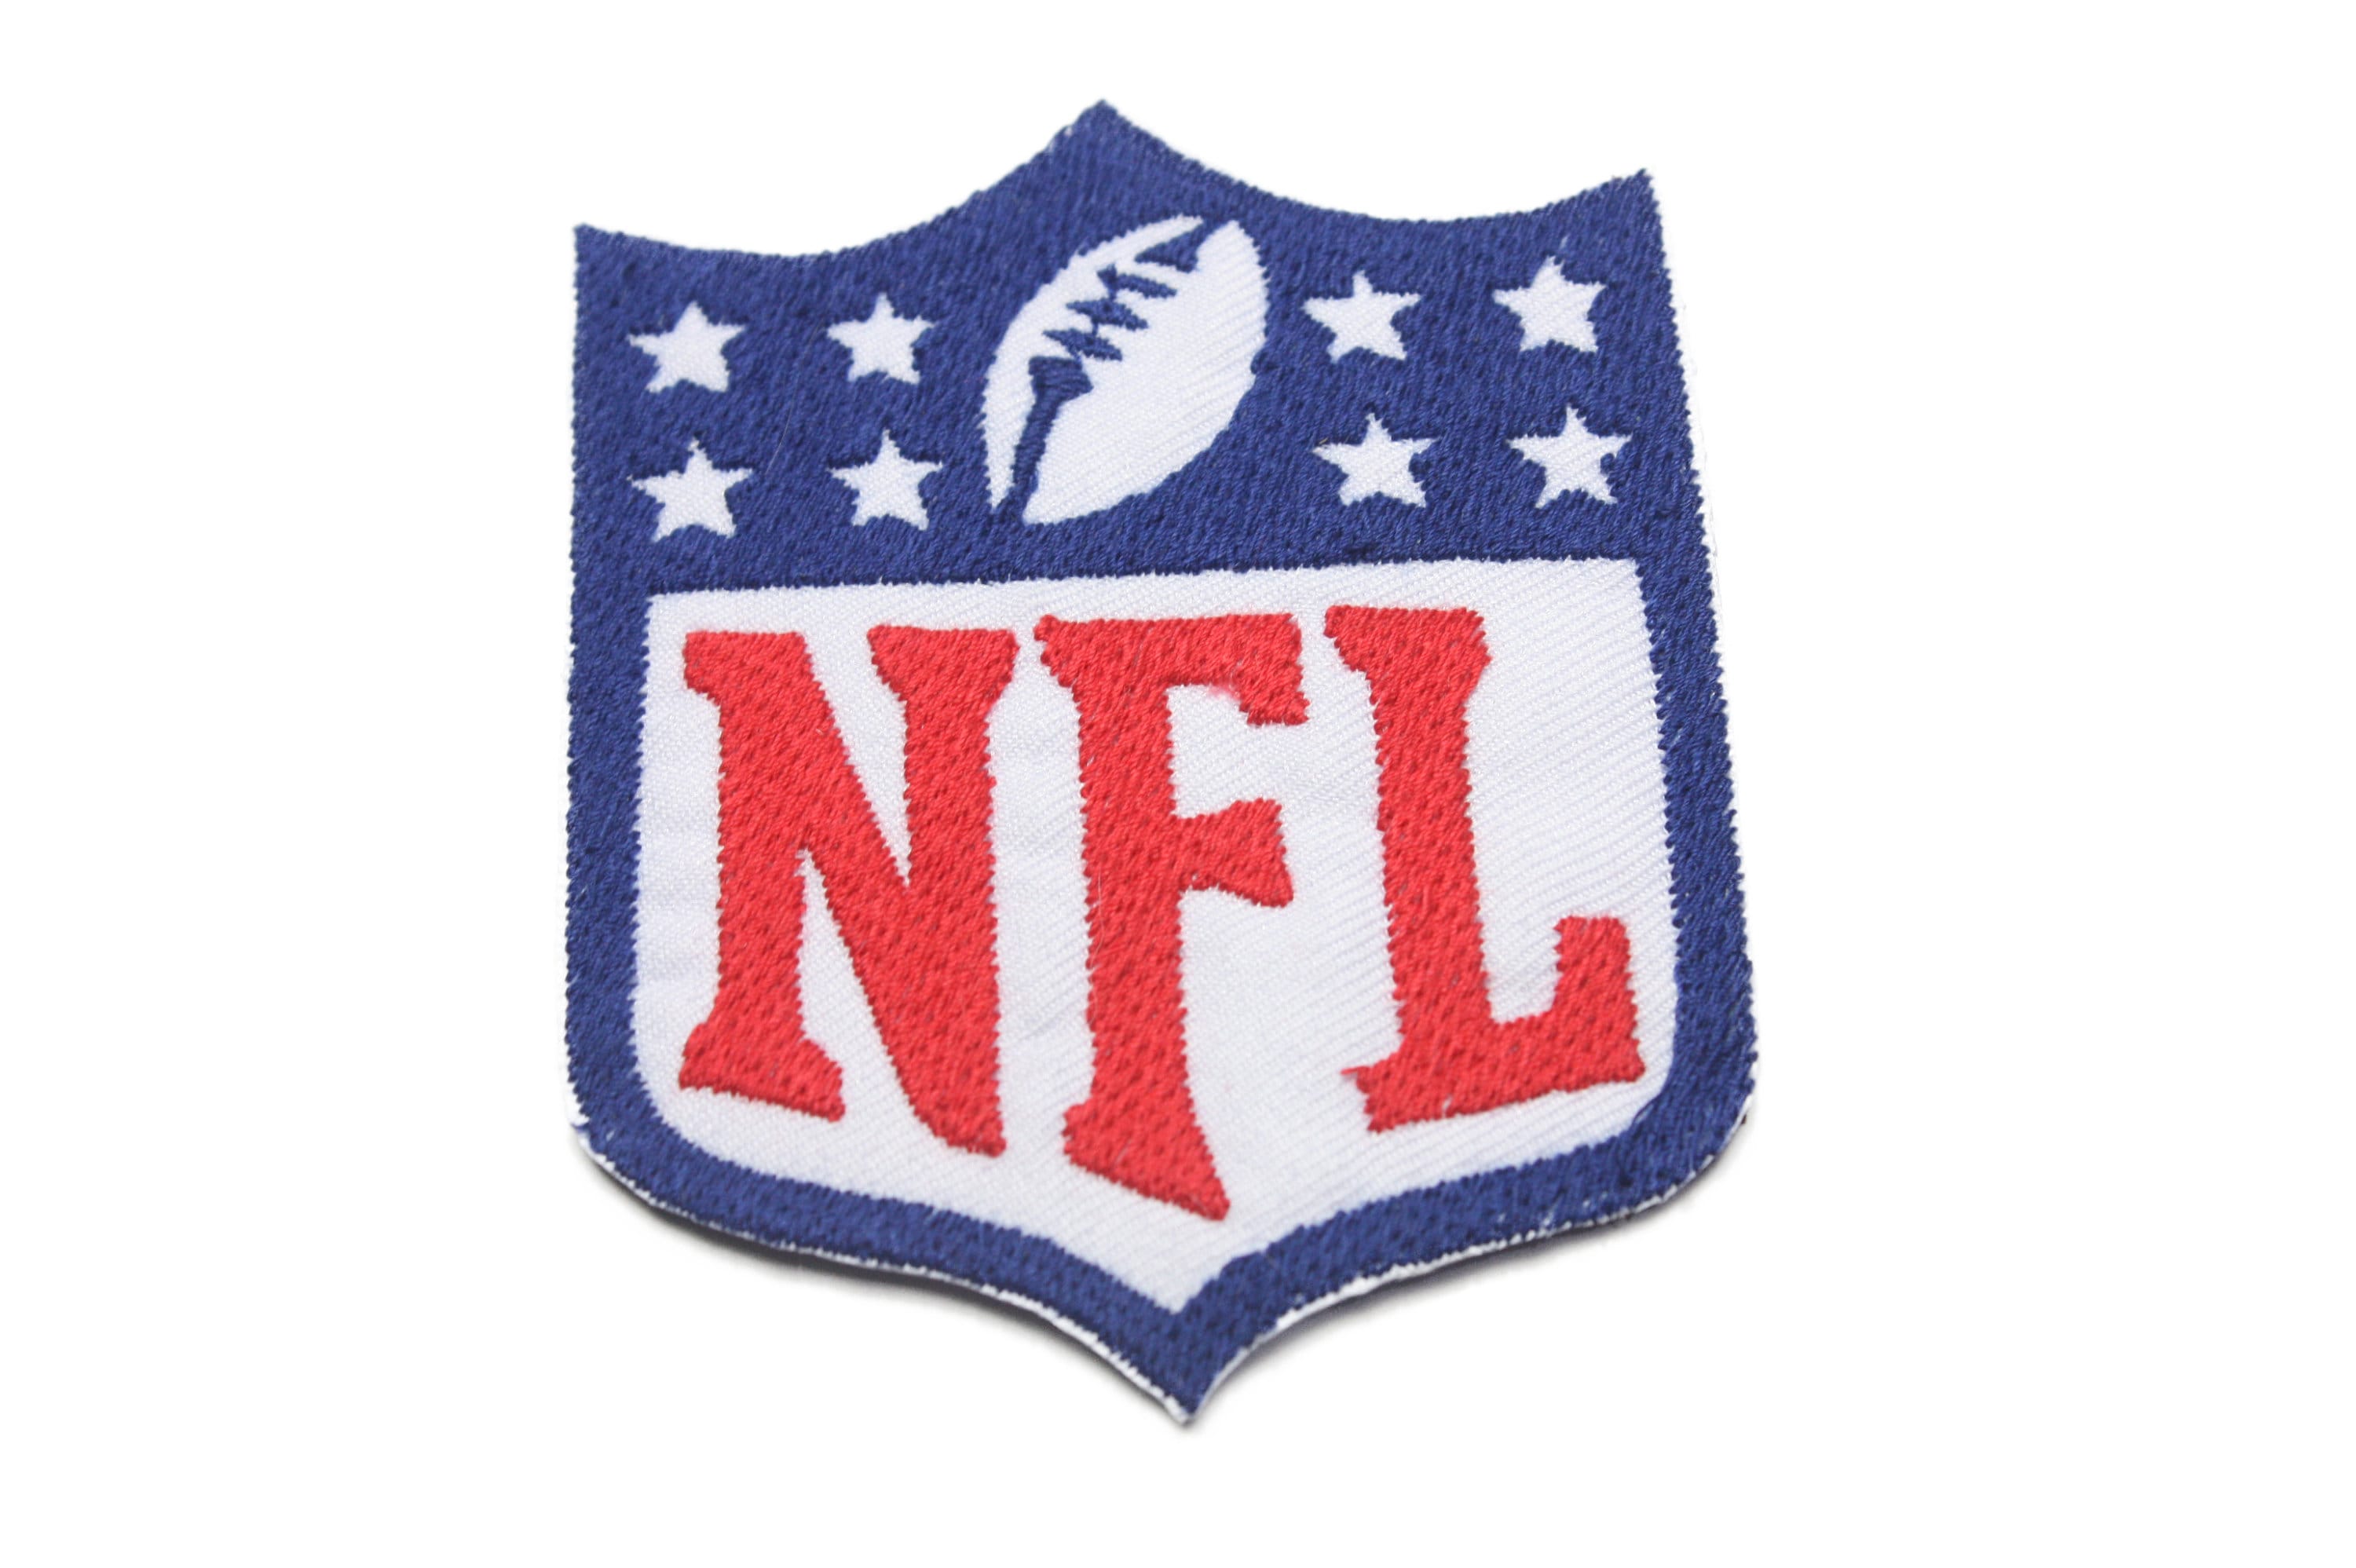 Patch - NFL shield logo